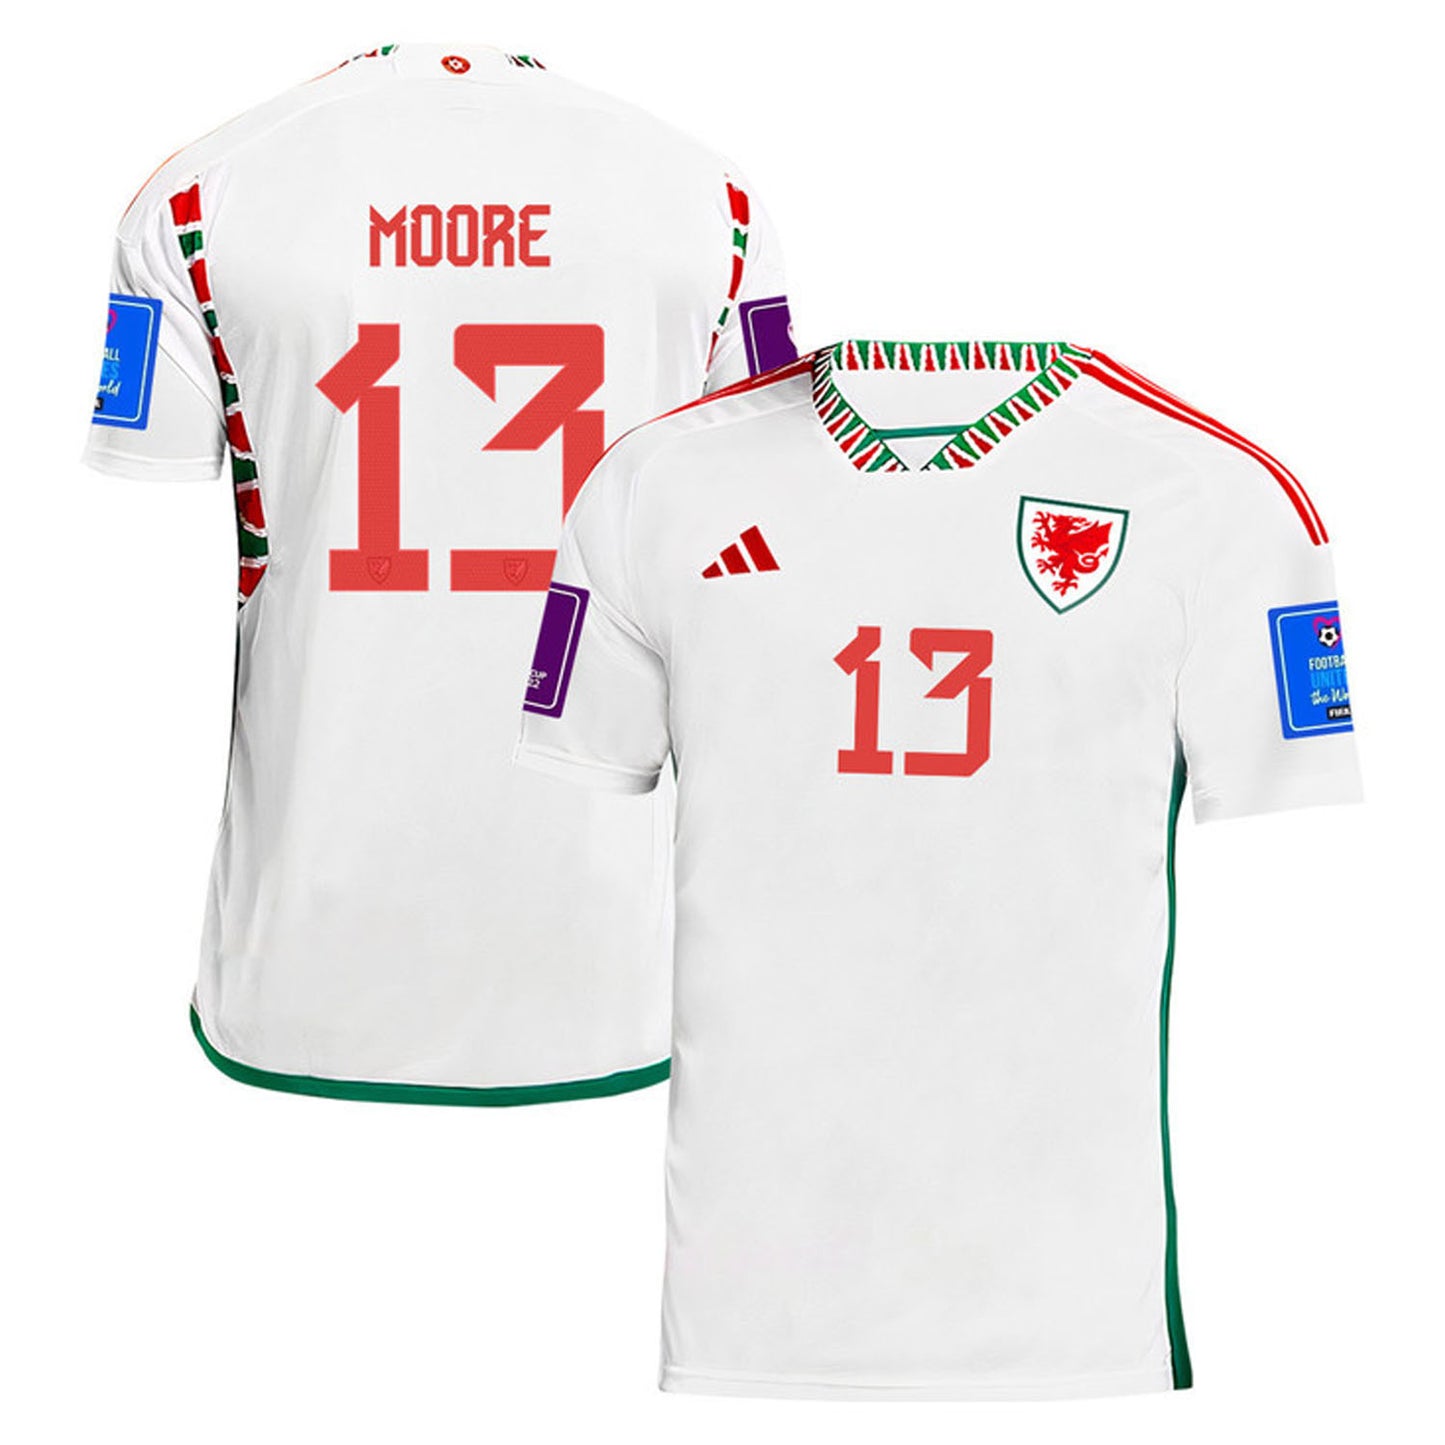 Kieffer Moore Wales 13 Fifa World Cup Jersey